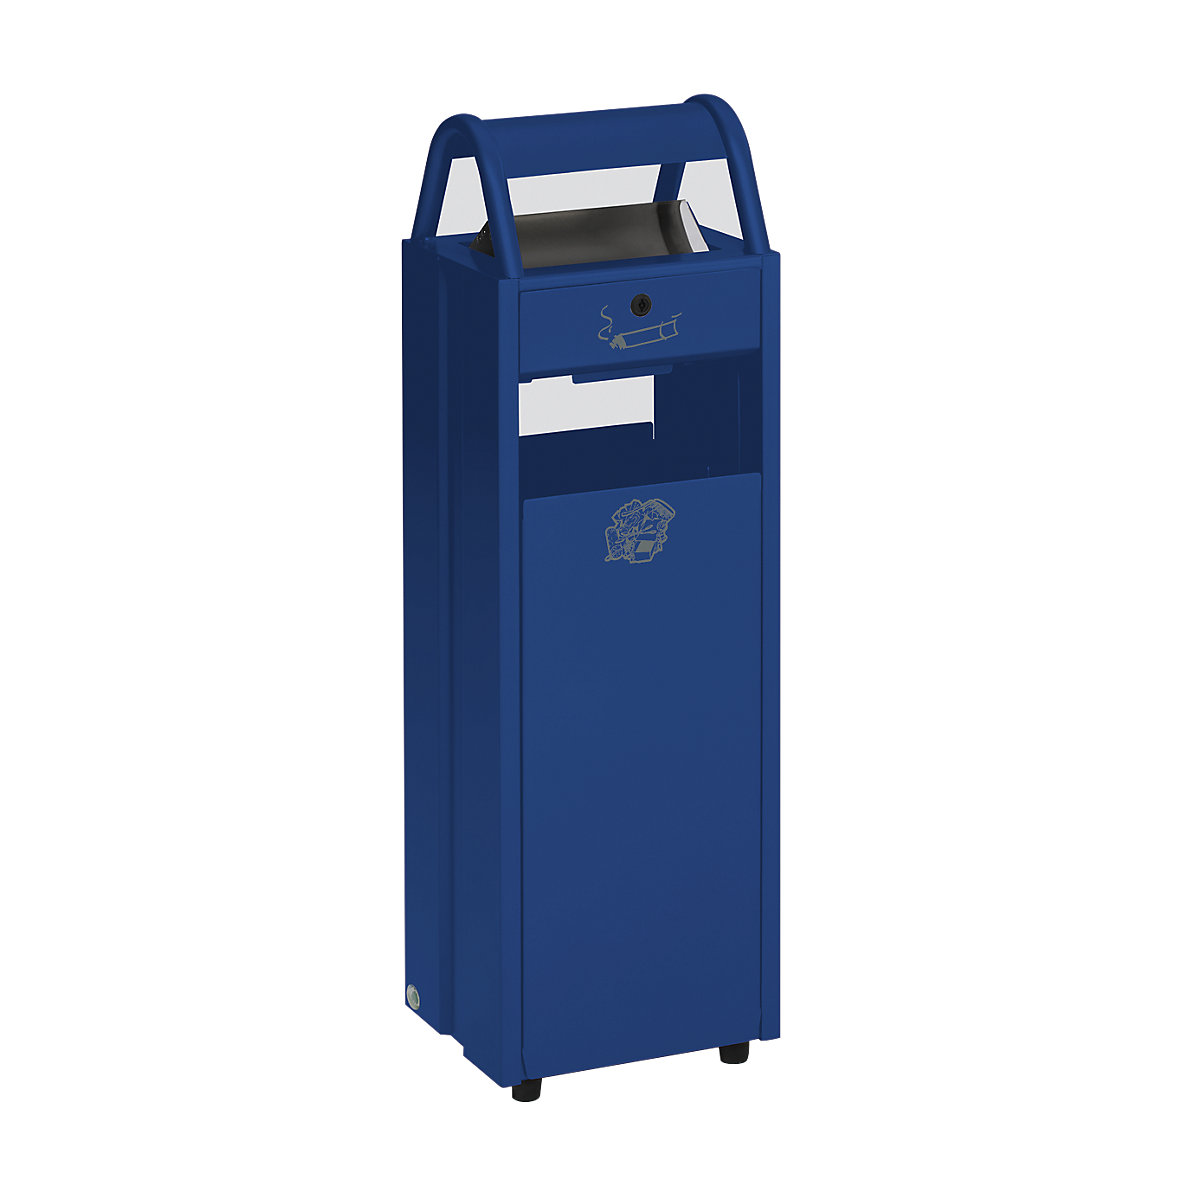 VAR Abfallbehälter mit Ascher, Volumen 35 l, BxHxT 300 x 960 x 250 mm, blau RAL 5010